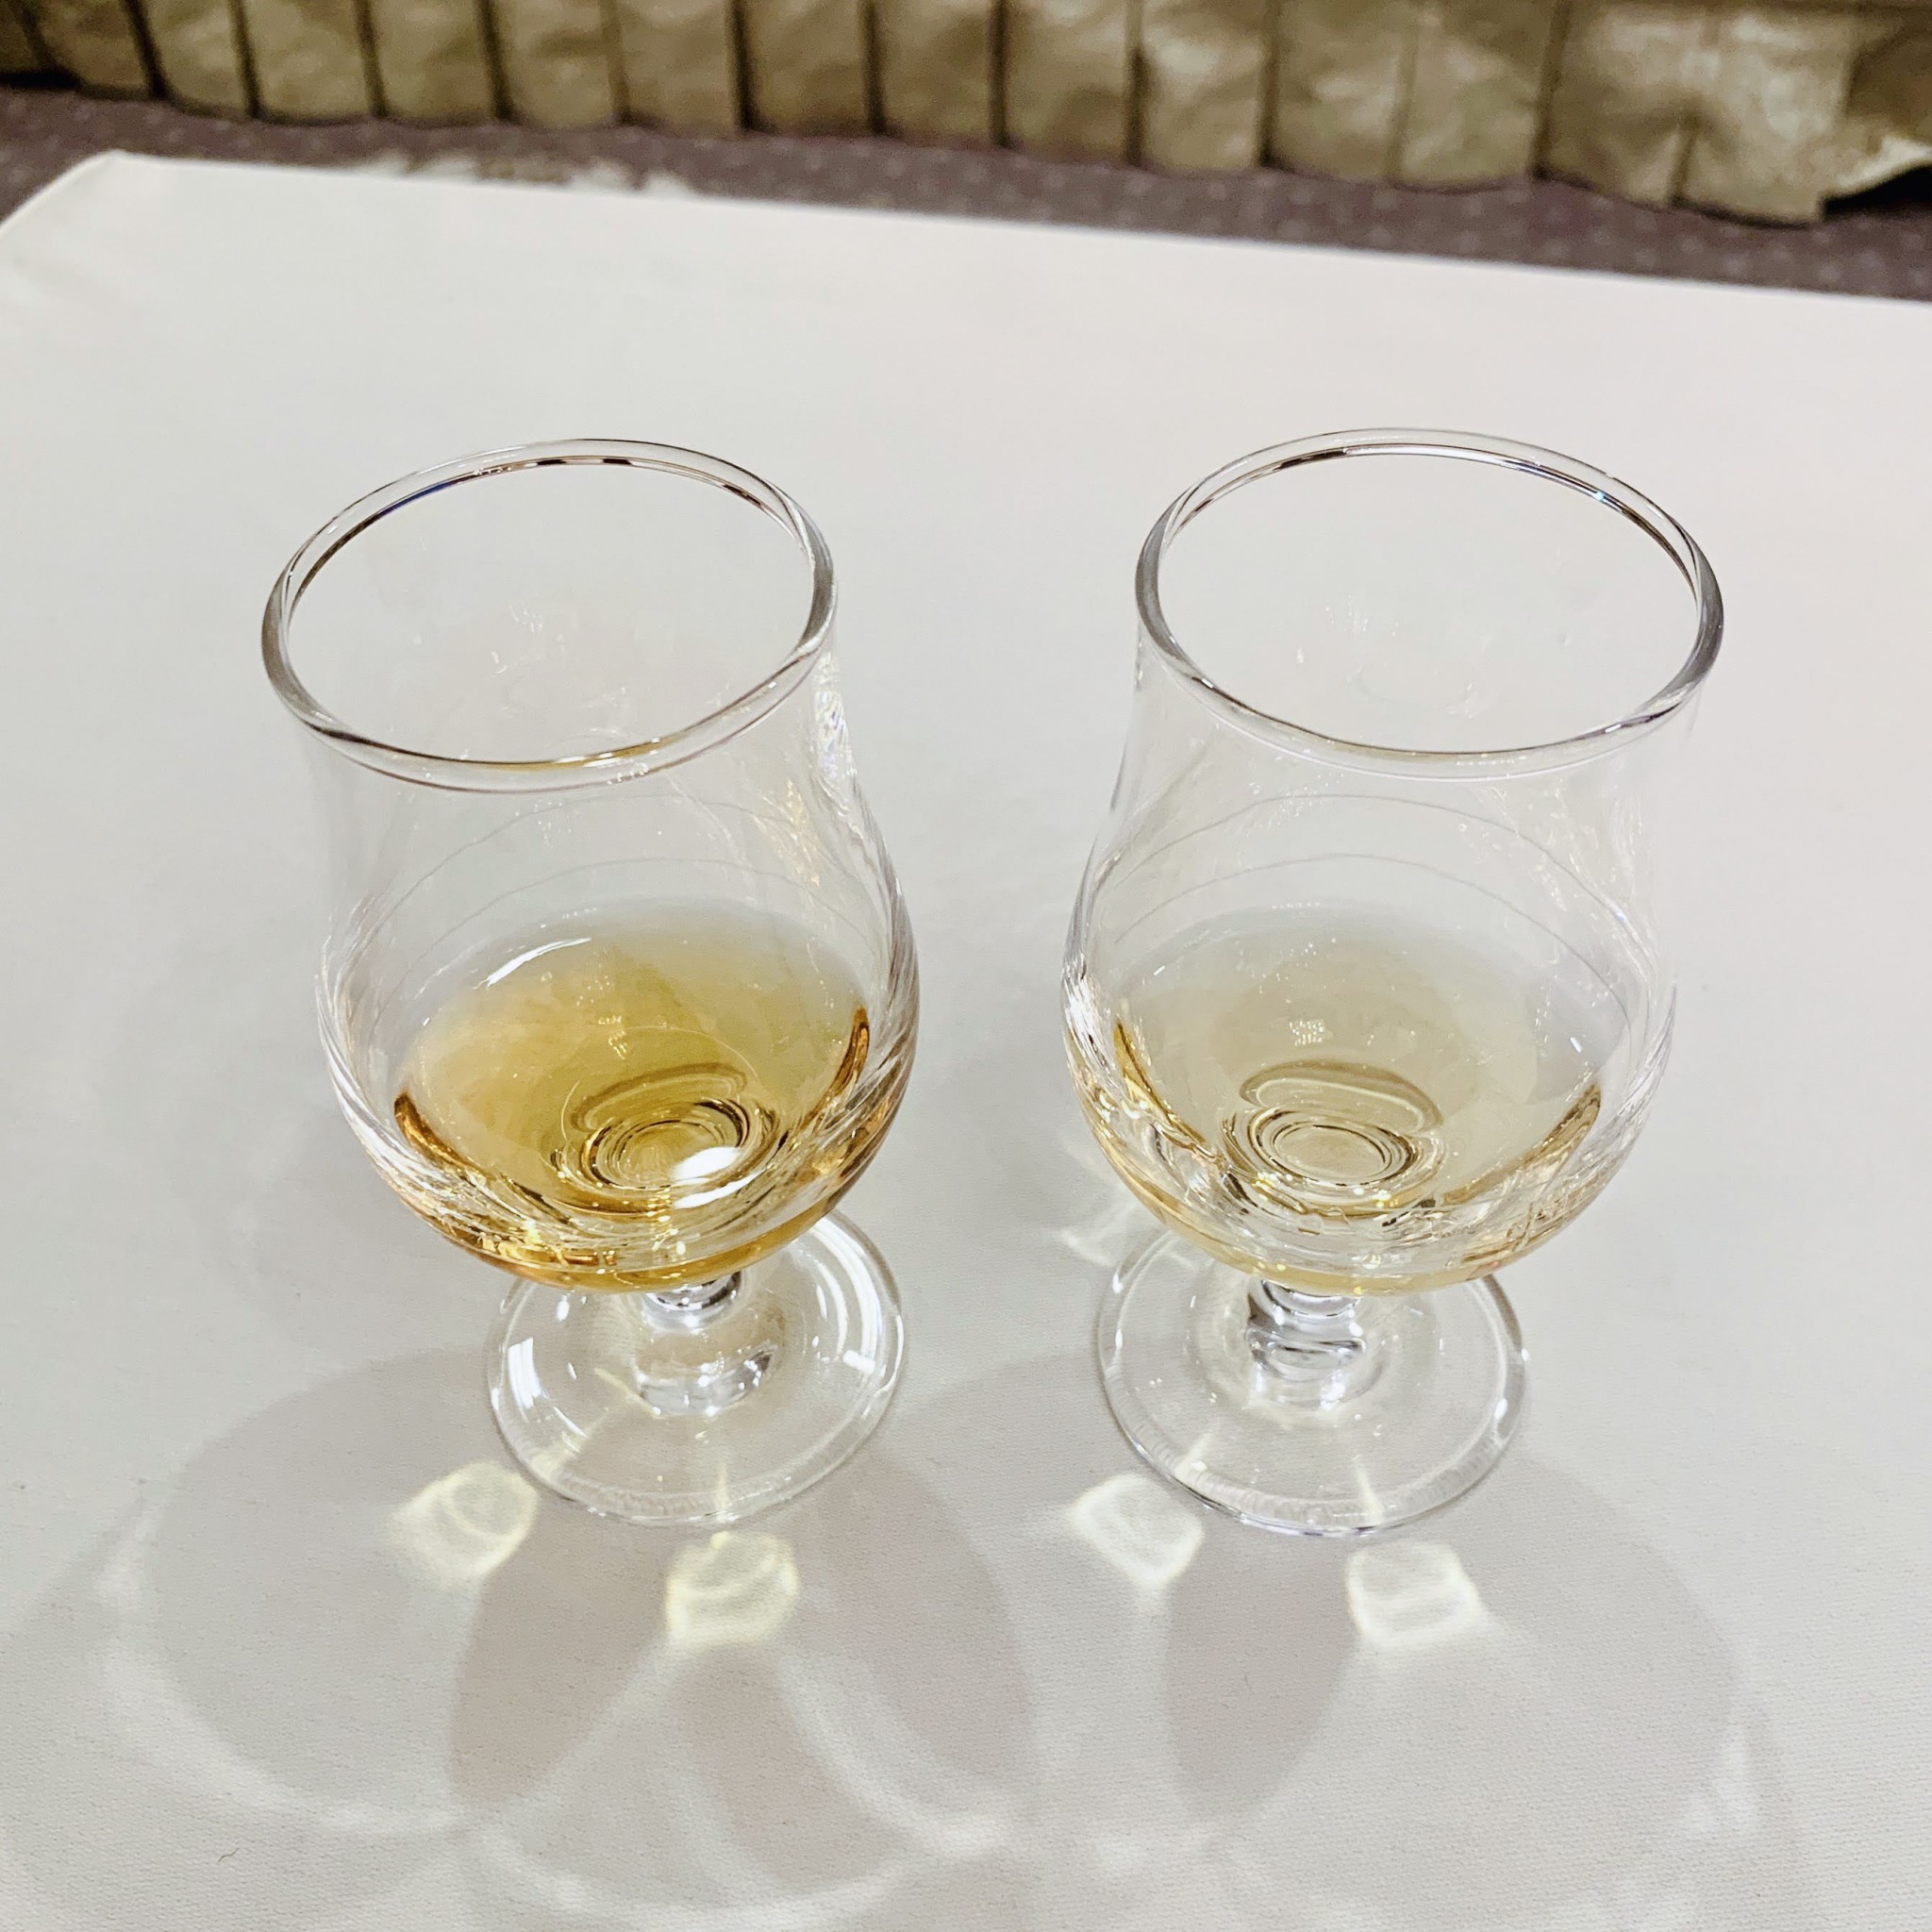 左から「カナディアンウイスキー除きブレンド」、「碧 Ao」。ブレンダーもウイスキーの個性を確認するために、ウイスキー原酒そのものではなく、除きブレンドで確認することもあるのだそう。